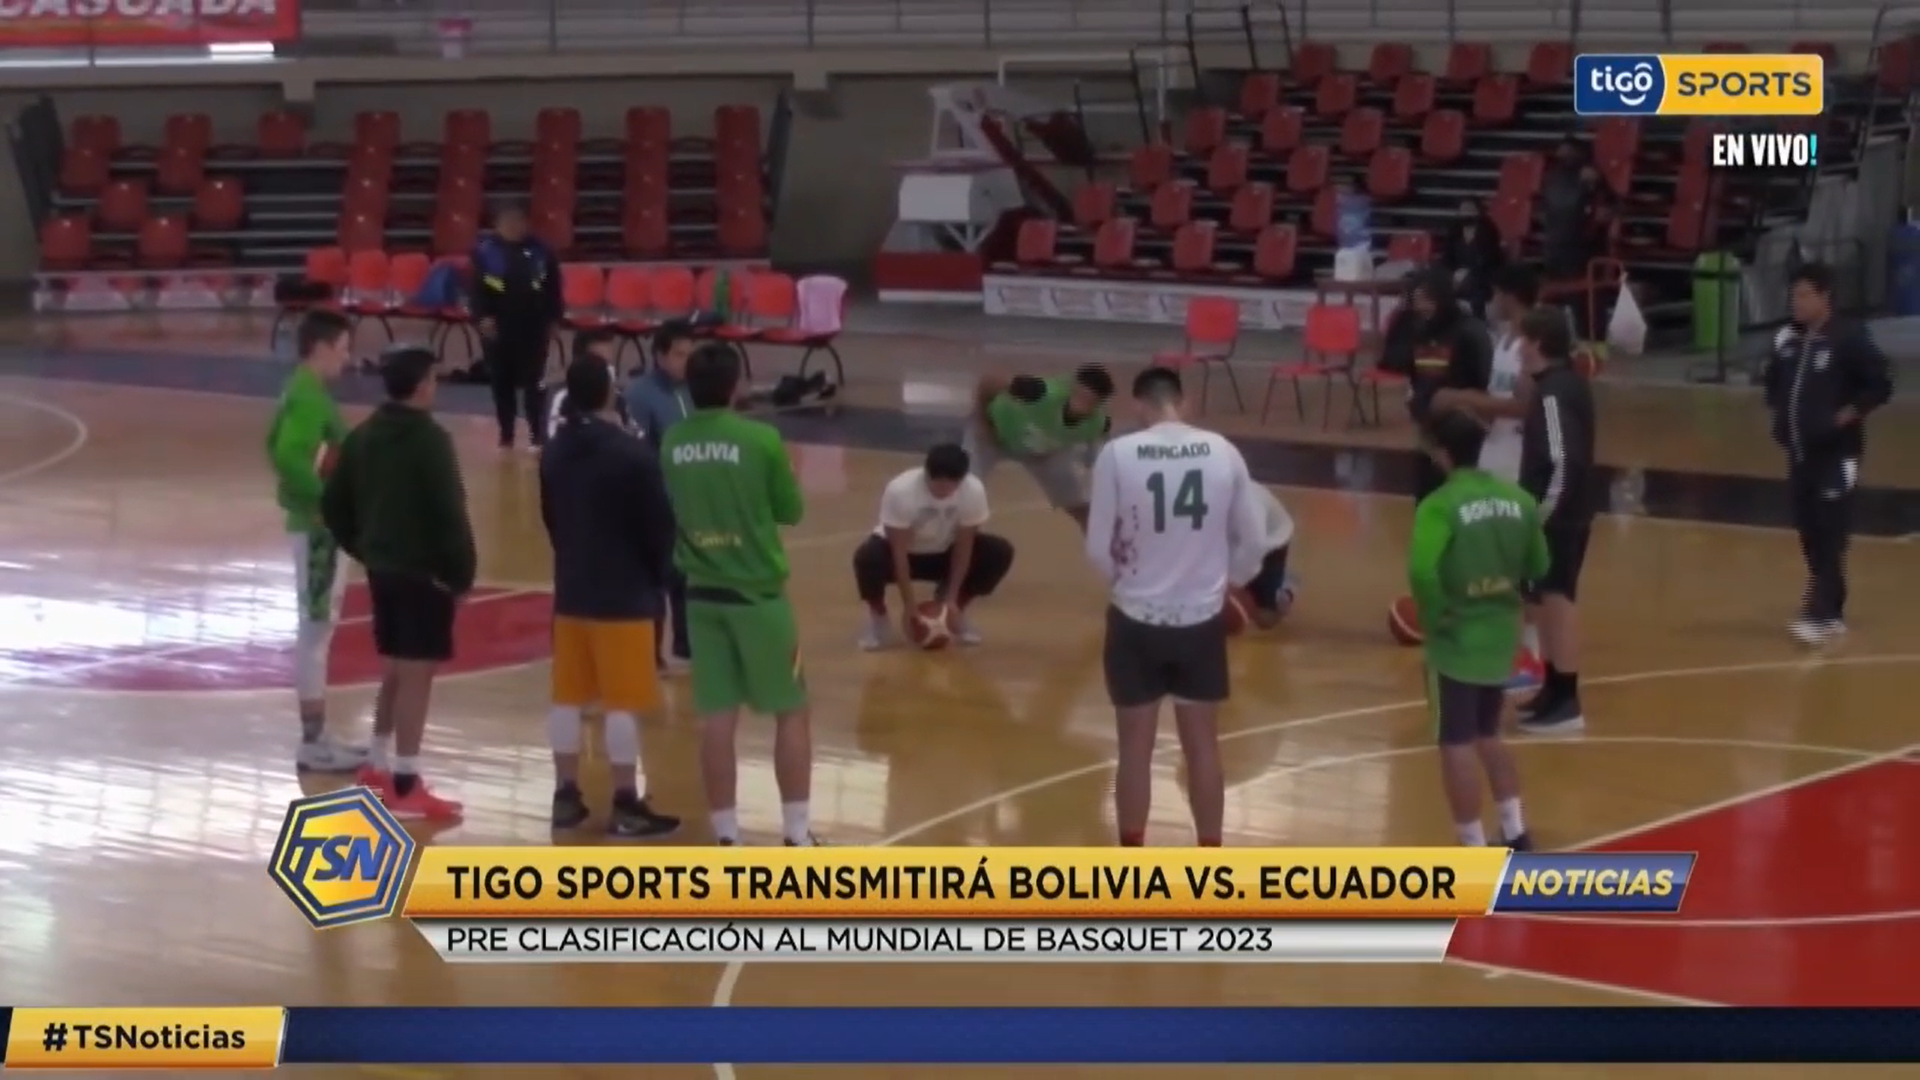 Tigo Sports transmitirá el partido de la selección boliviana